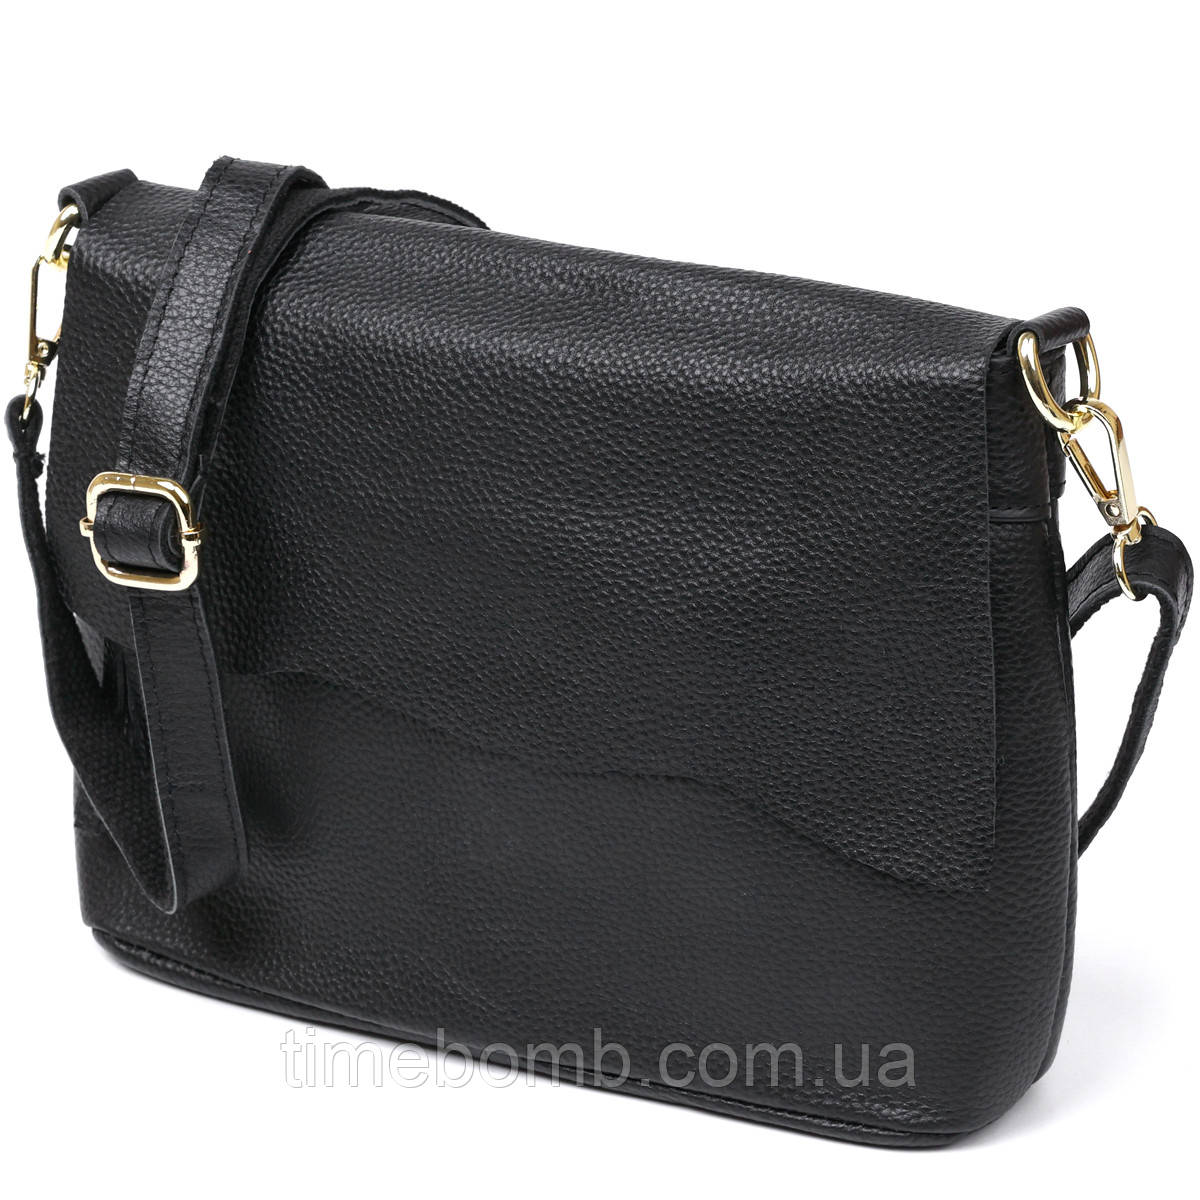 Невелика шкіряна жіноча сумка Vintage 20685 Чорний